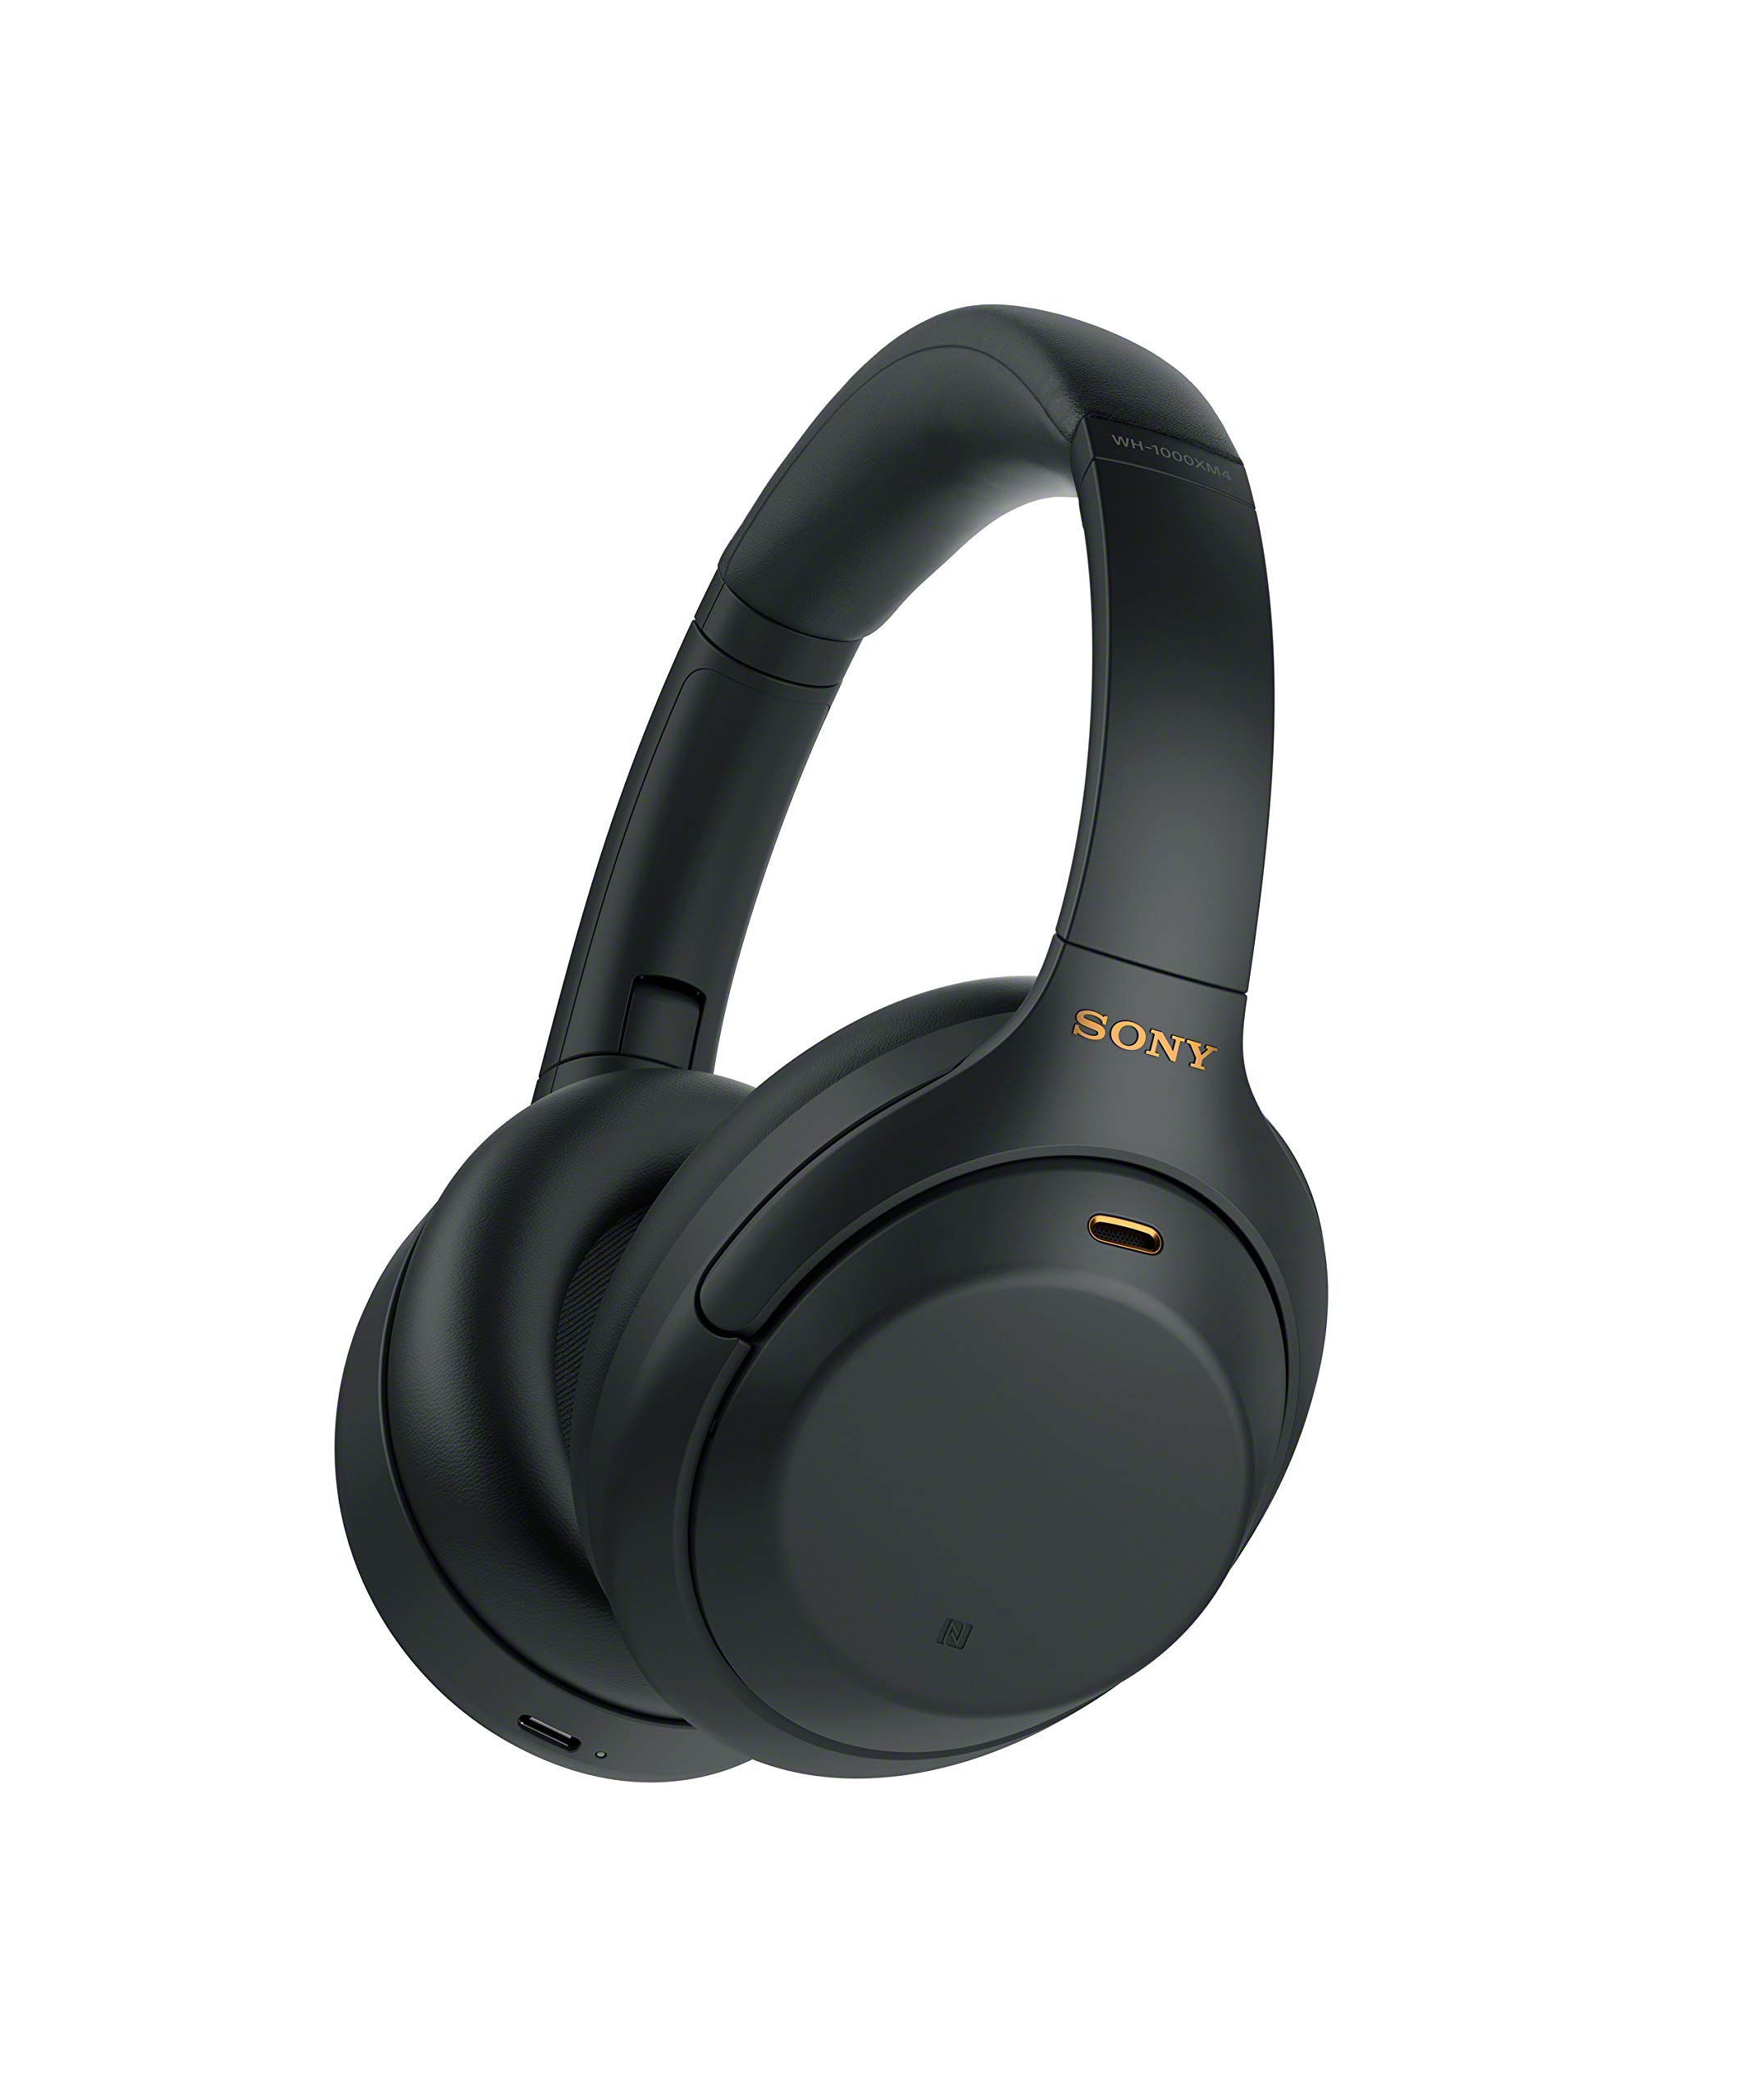 Sony Casque d'écoute sans fil à réduction de bruit WH-1000XM4 - Noir (renouvelé)